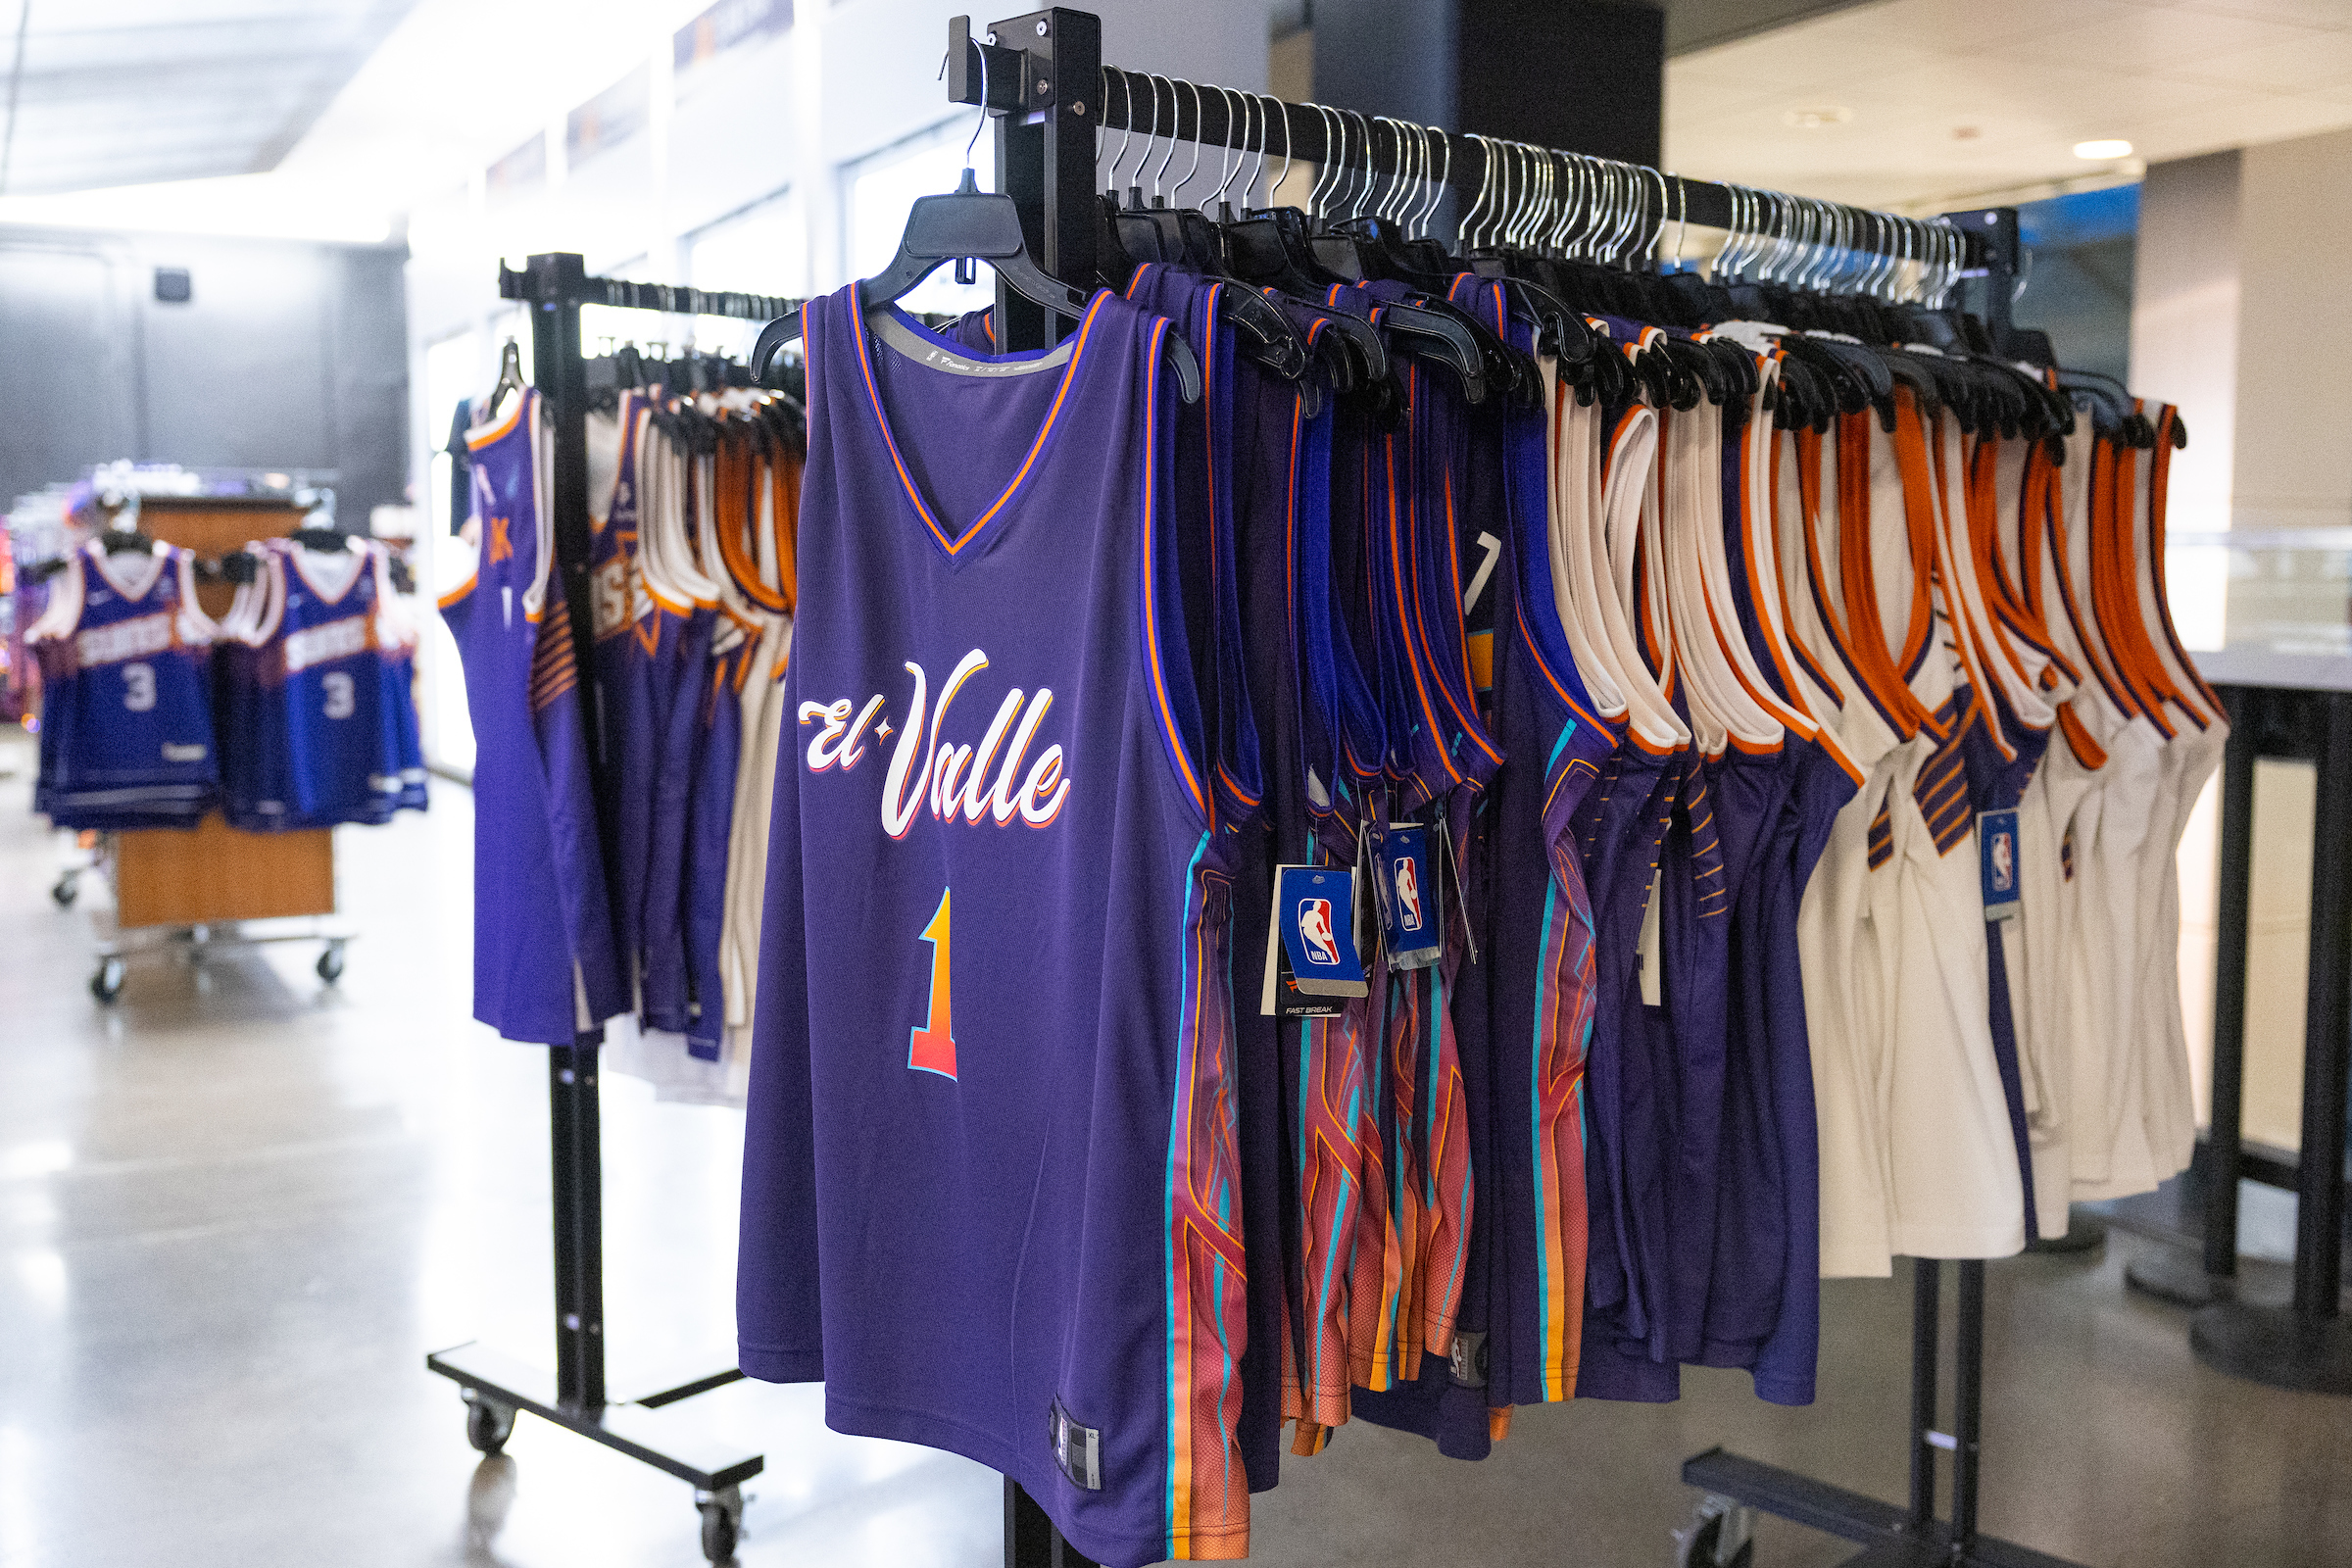 El Valle jerseys hanging on racks at Footprint Center